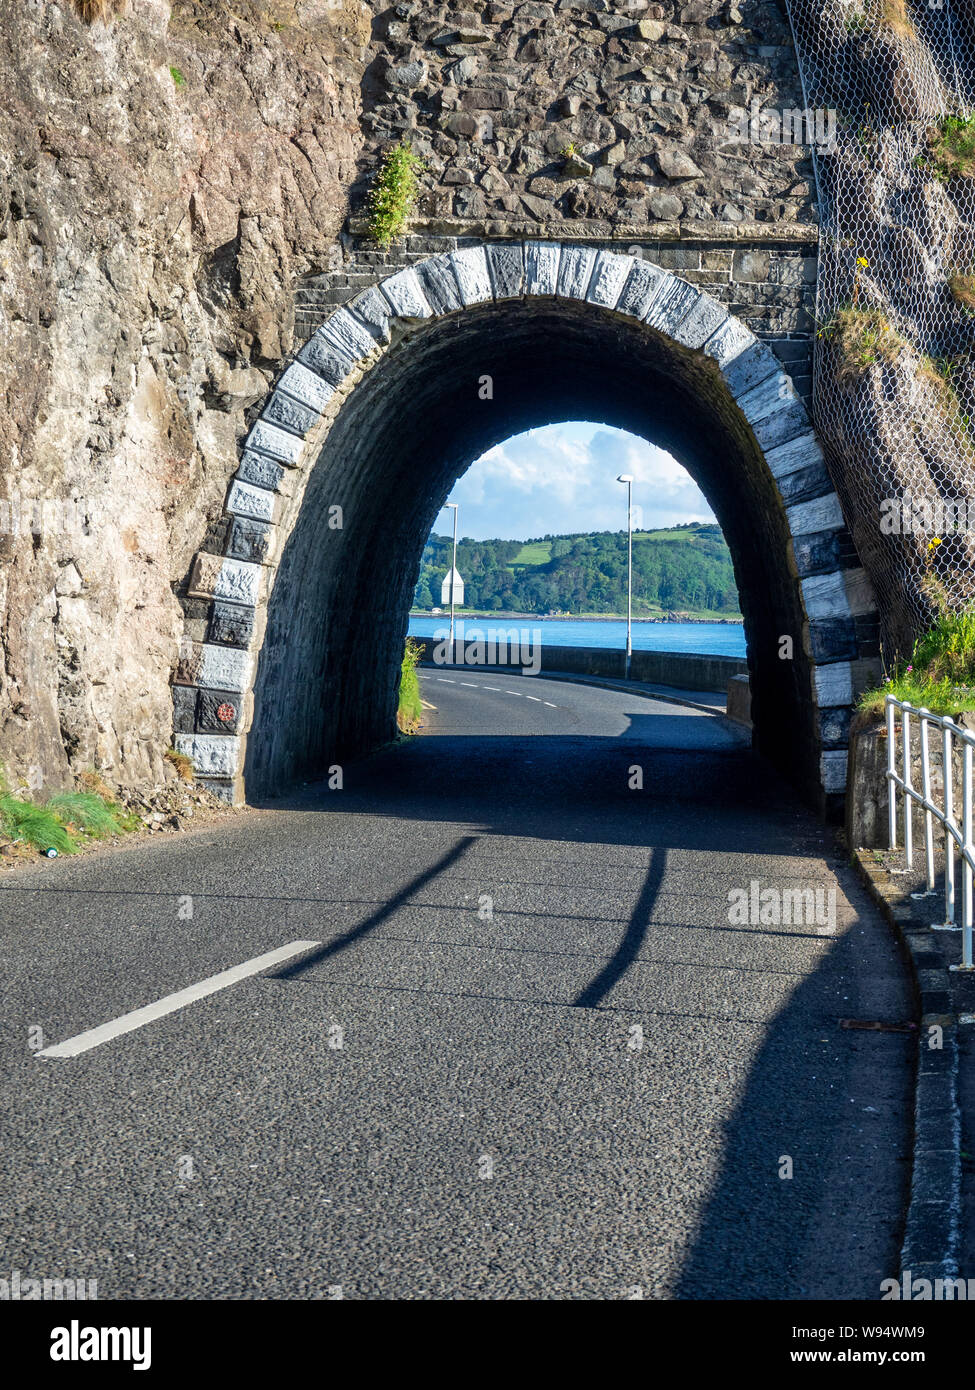 Nero tunnel ad arco con cadute di massi, frane protezione netto e Causeway percorso costiero. Scenic coast road nella contea di Antrim, Irlanda del Nord Foto Stock